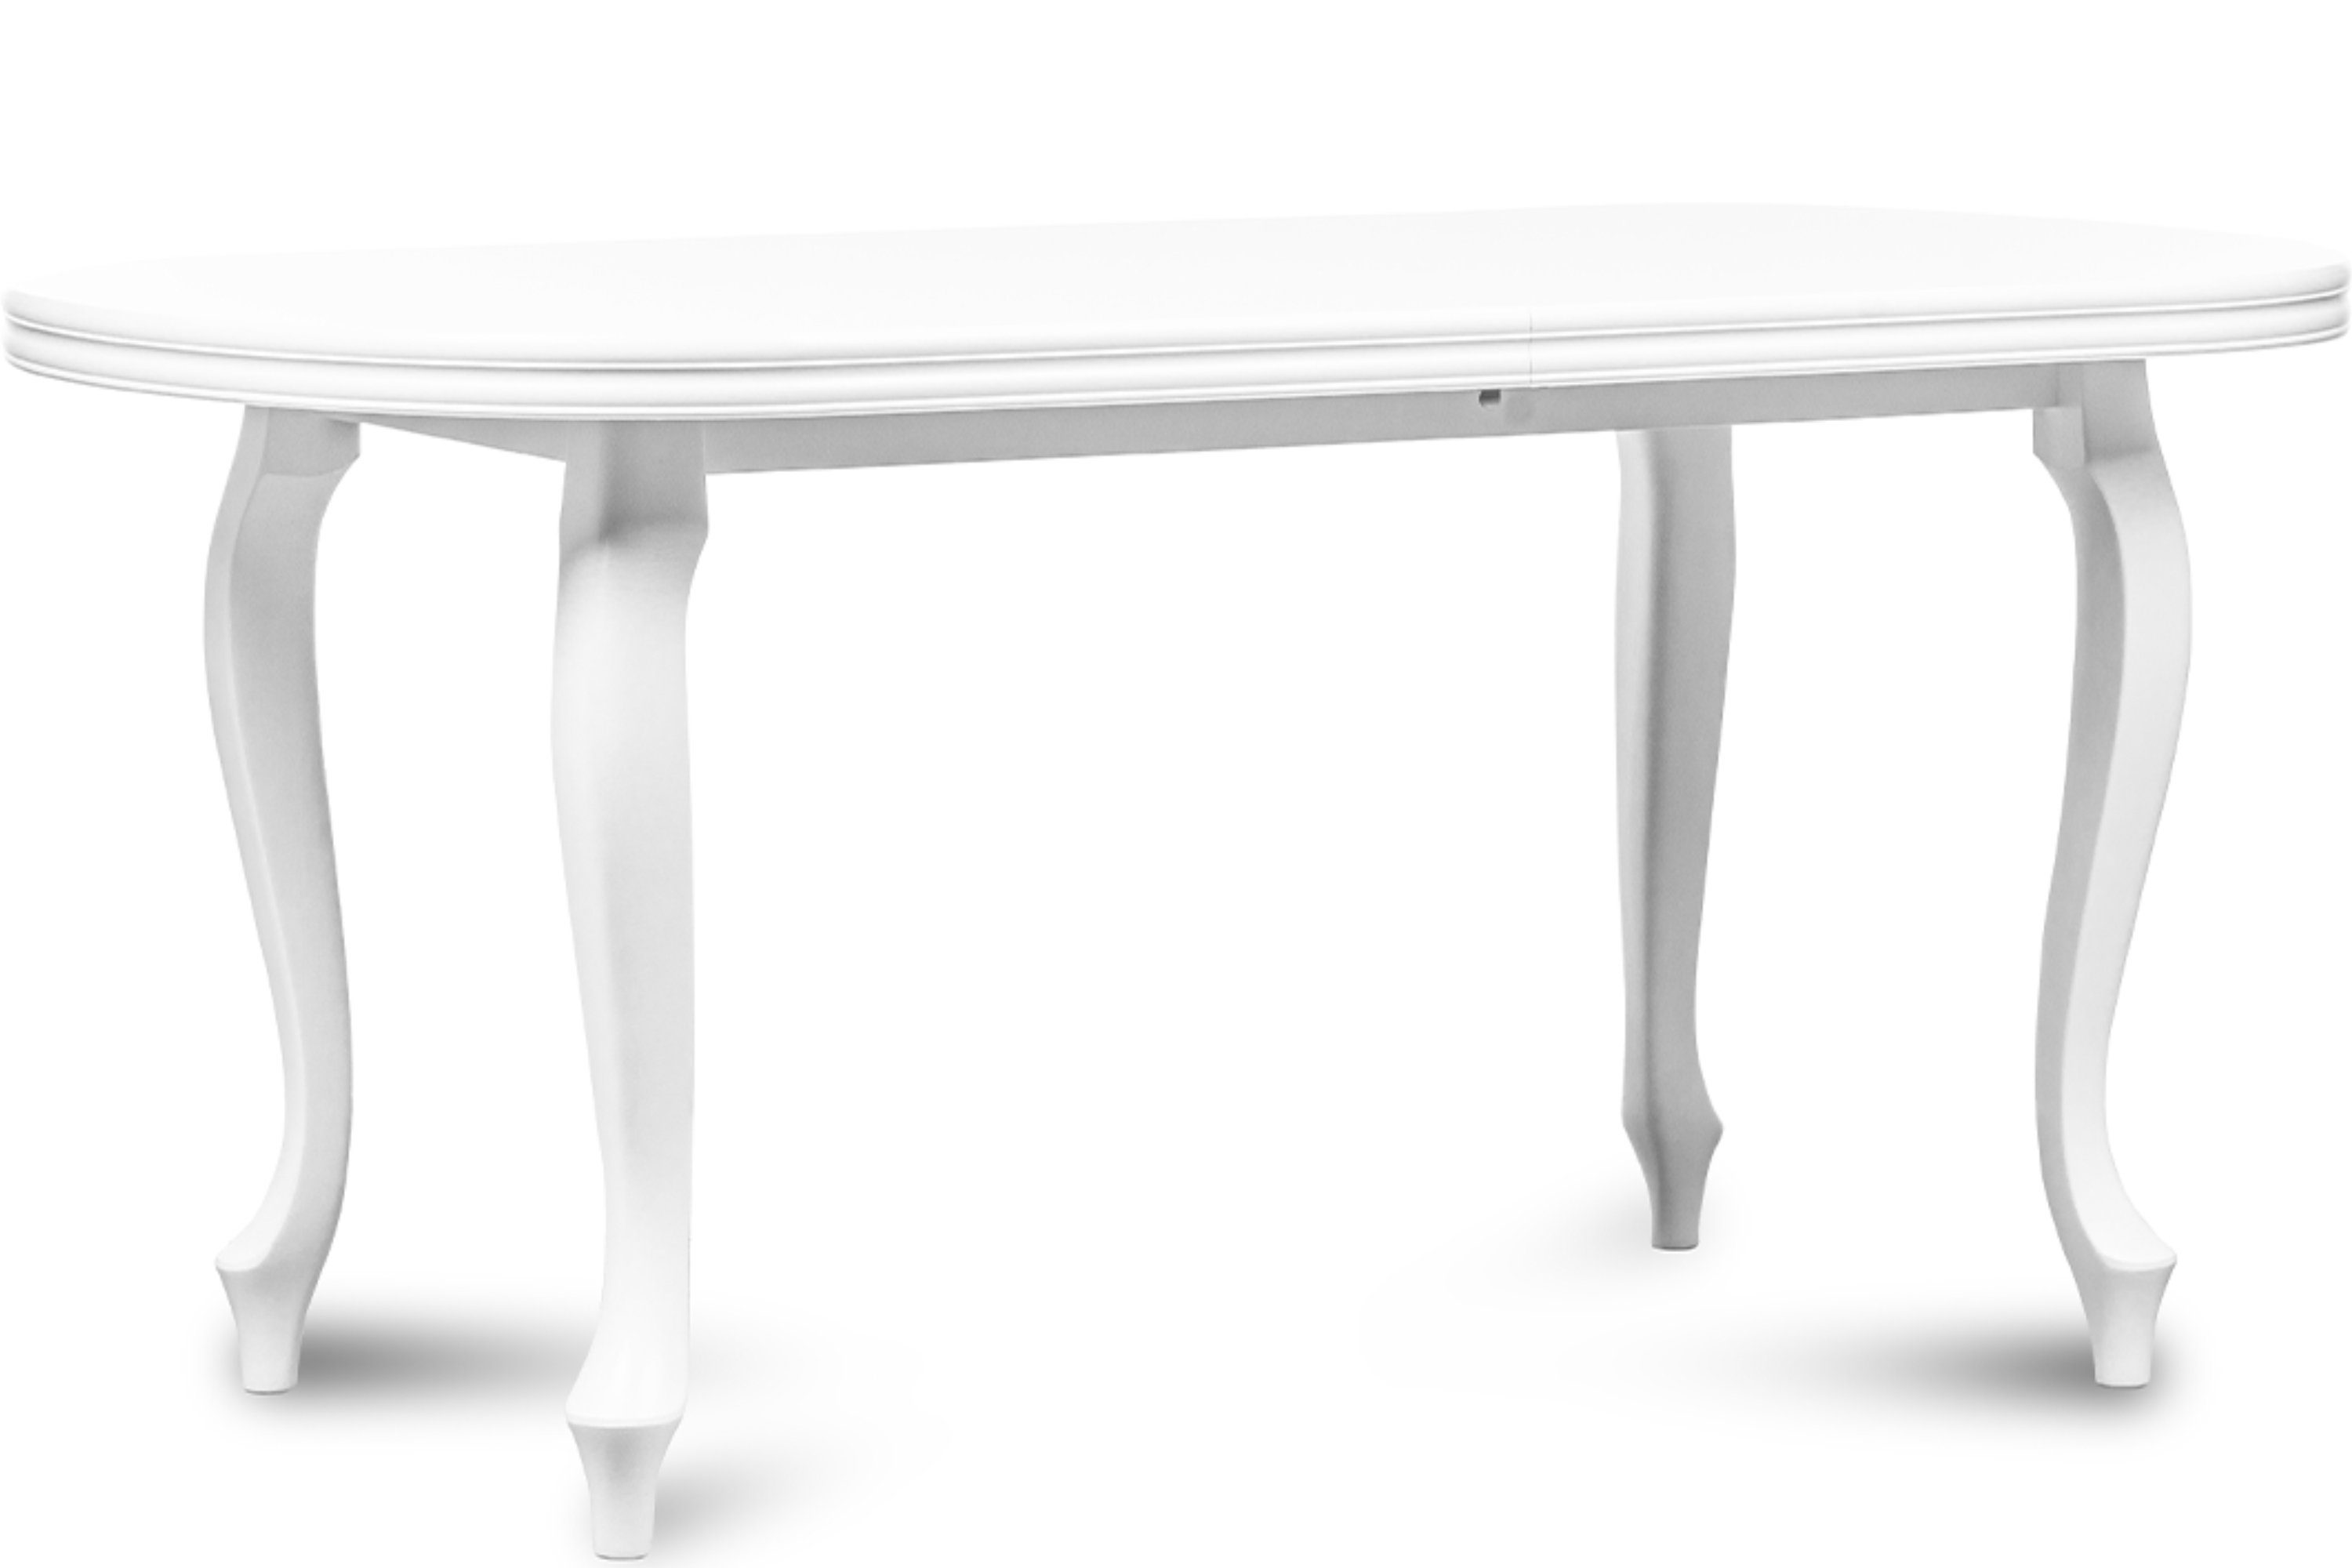 Konsimo Esstisch ALTIS Esszimmertisch Küchentisch 140x80 cm, ausziehbar bis 180cm, oval weiß | weiß | weiß